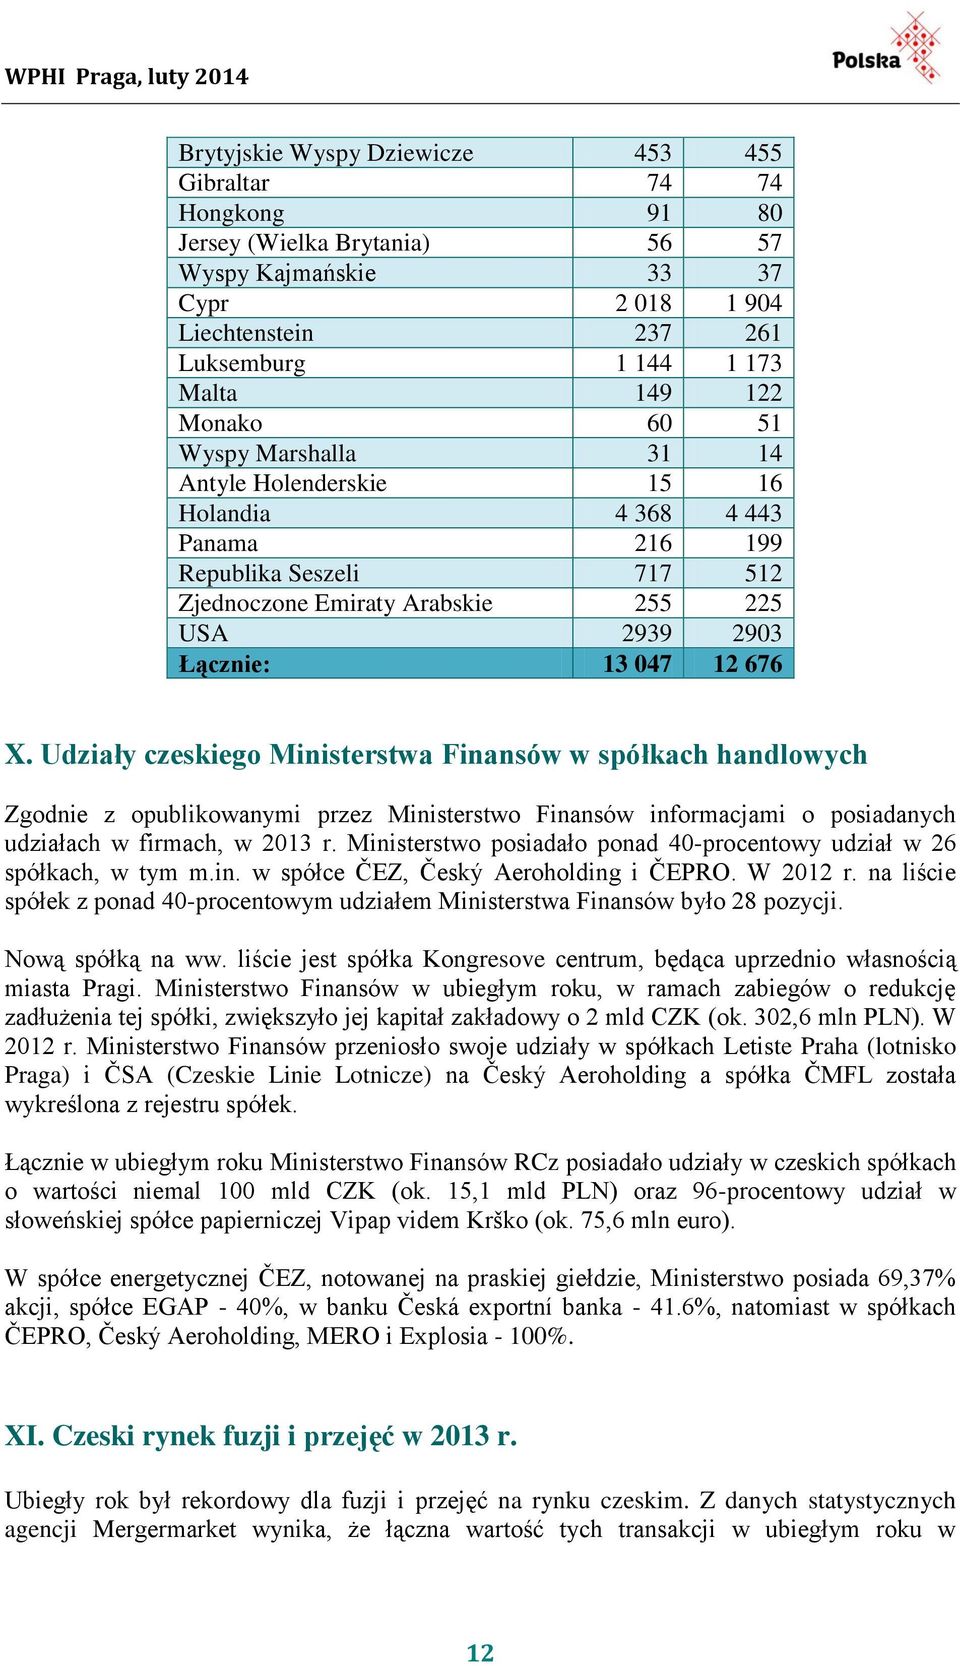 Udziały czeskiego Ministerstwa Finansów w spółkach handlowych Zgodnie z opublikowanymi przez Ministerstwo Finansów informacjami o posiadanych udziałach w firmach, w 2013 r.